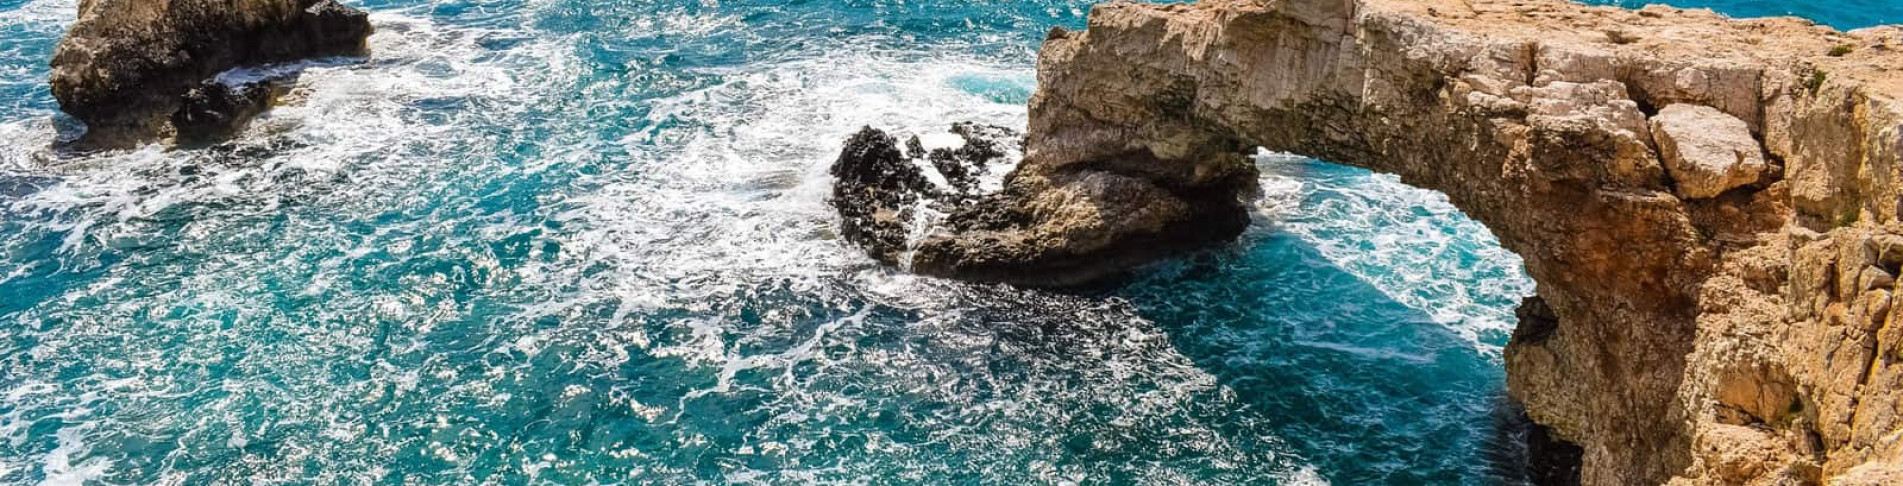 Zypern Urlaub buchen und bizarre Felsformationen erkunden